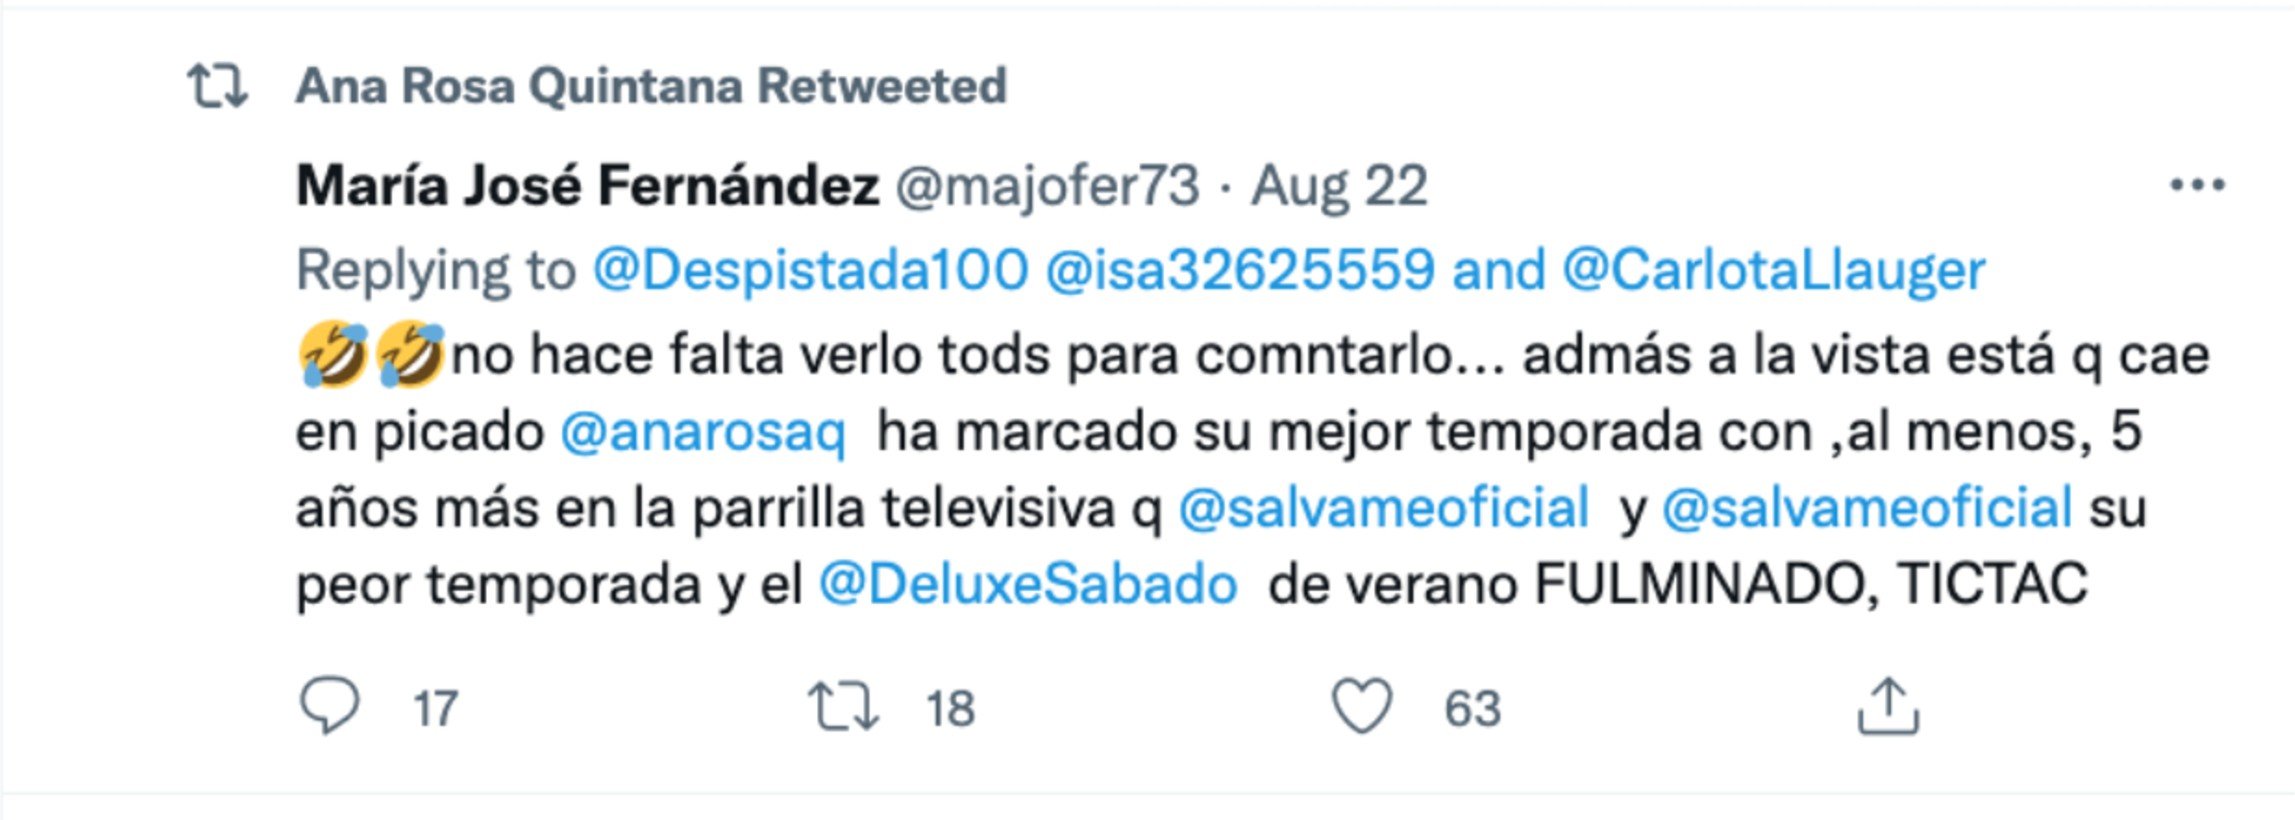 El tuit que ha compartido Ana Rosa Quintana.